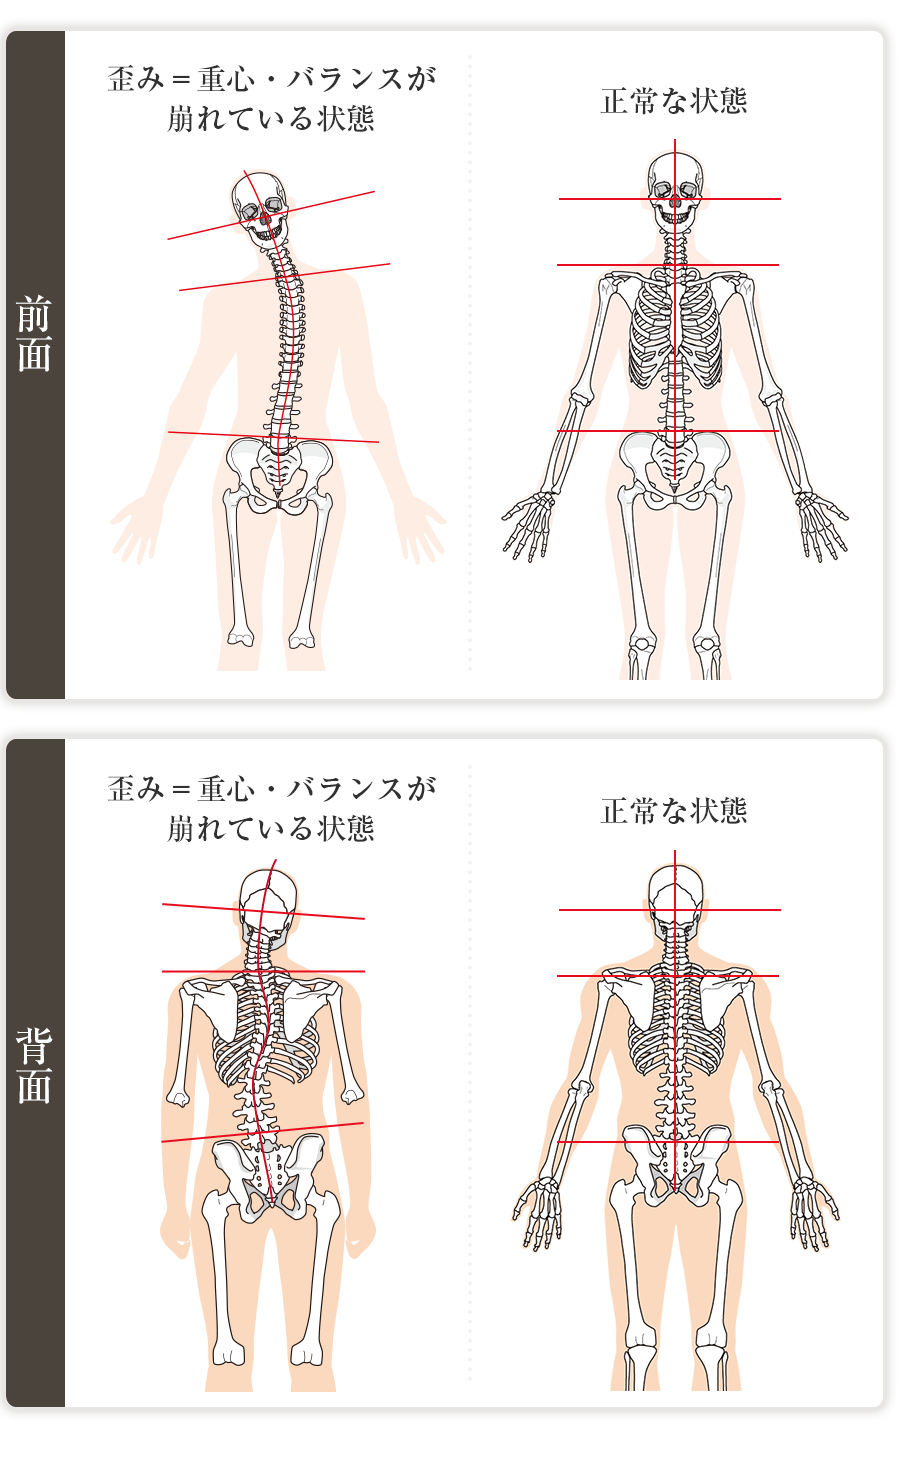 人体の歪みのある状態と正常な状態の比較図